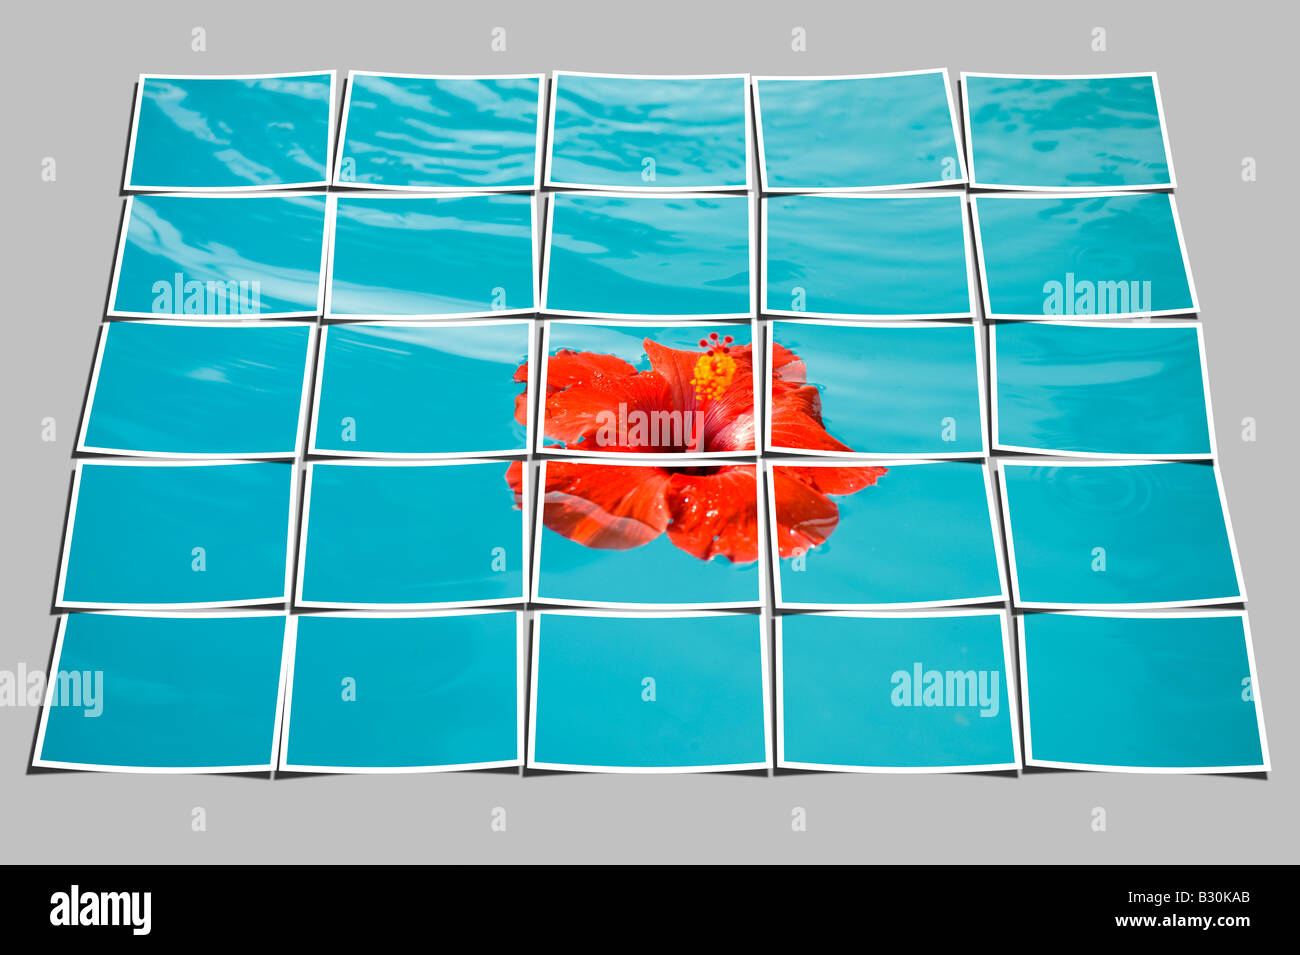 Piastrellate fotografia di fiori di ibisco galleggianti in piscina Foto Stock